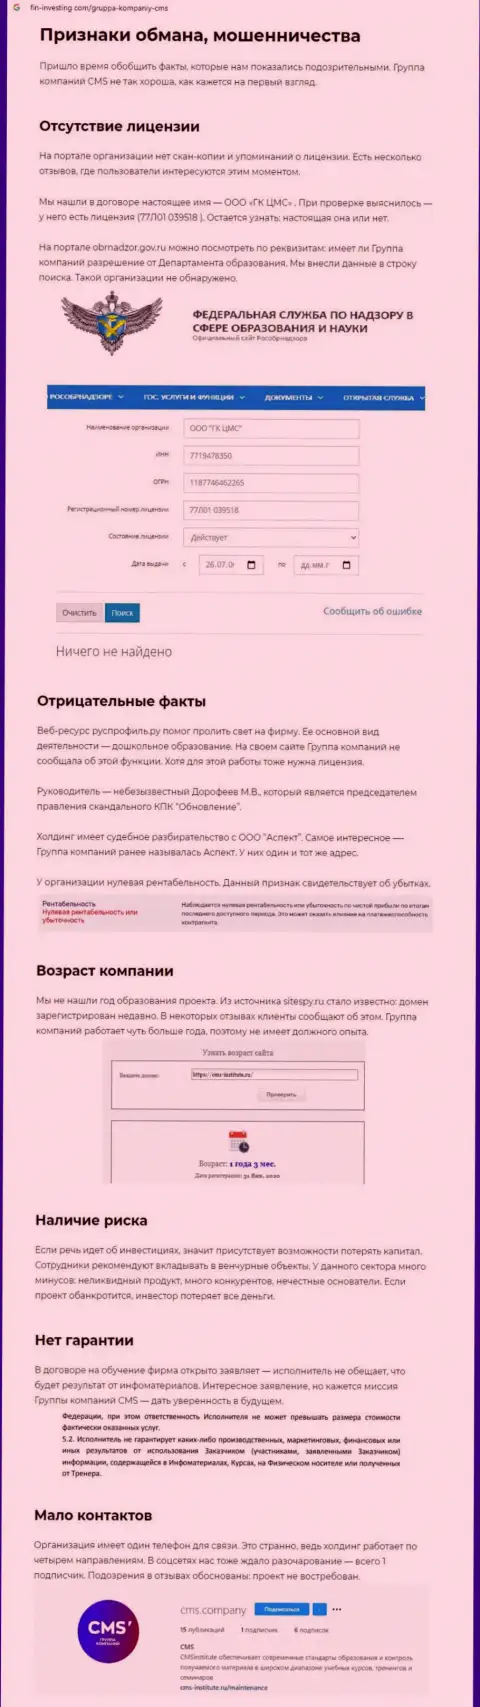 Статья об незаконных действиях воров CMS-Institute Ru, будьте крайне осторожны !!! ОБМАН !!!